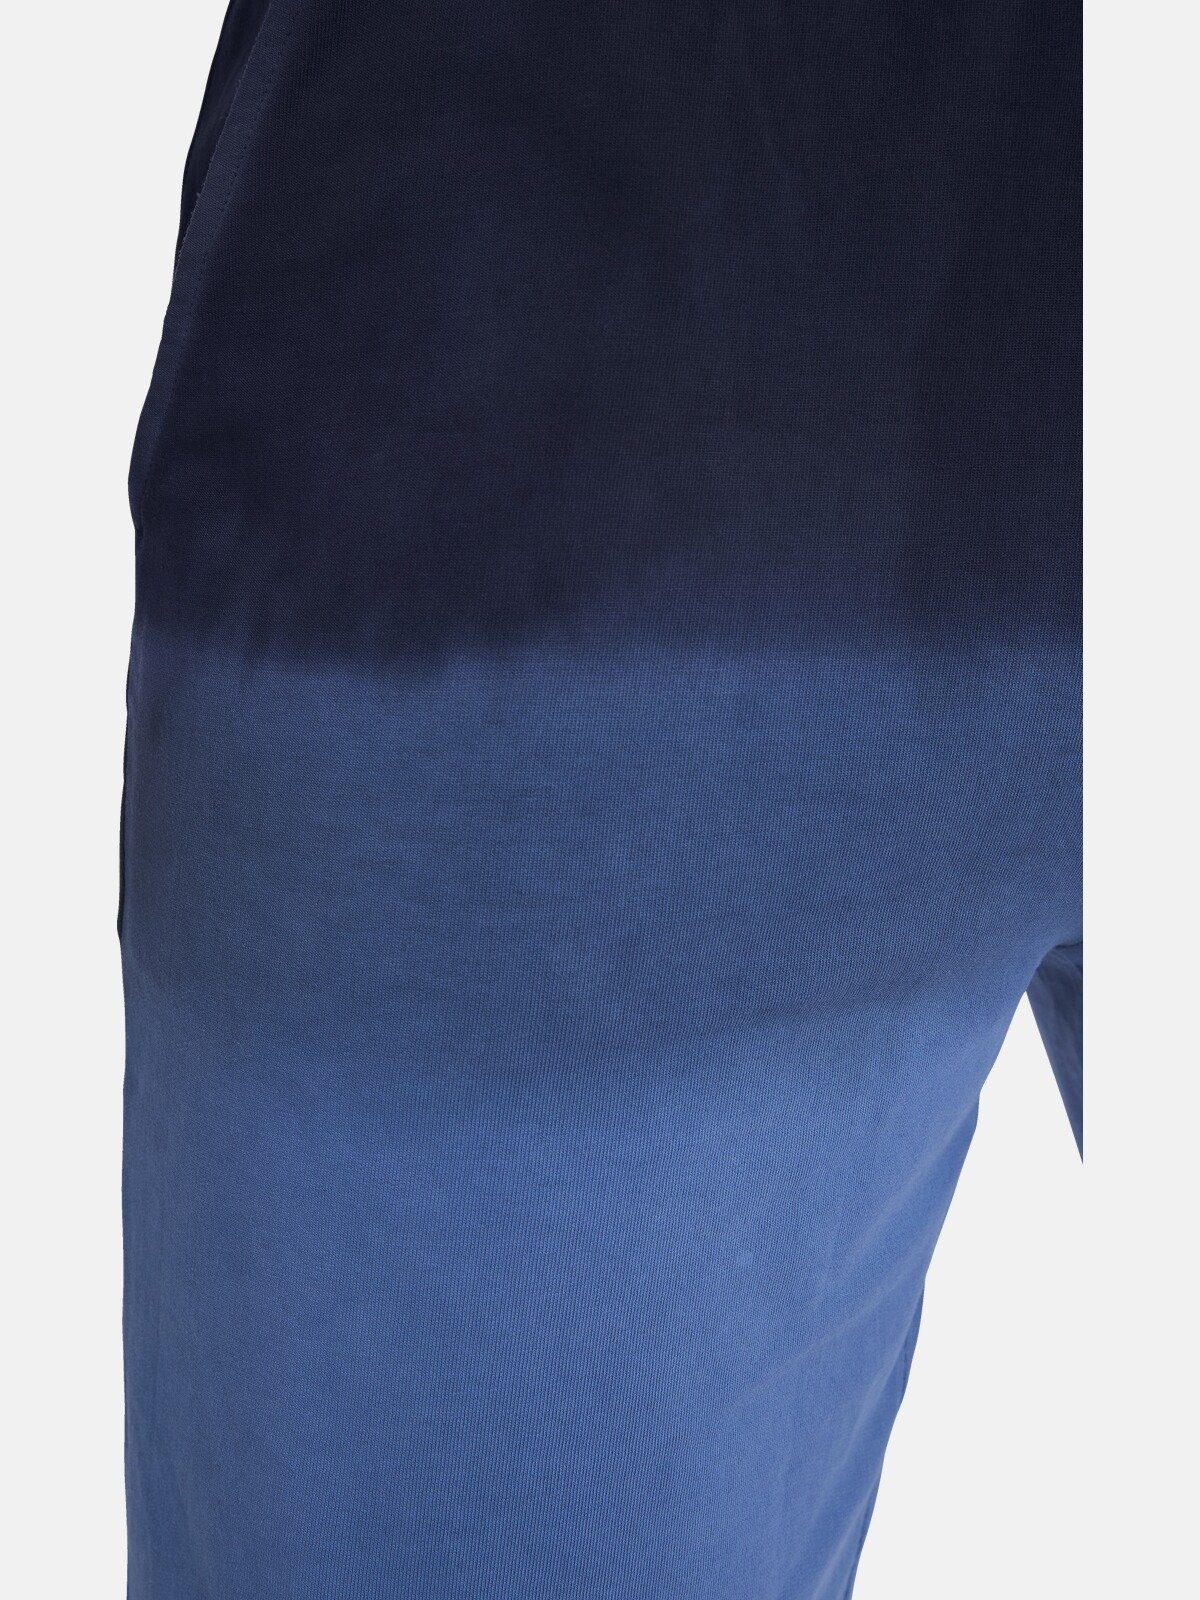 Jan Vanderstorm Jogginghose PANU Dip-dye-Färbung dunkelblau spezielle